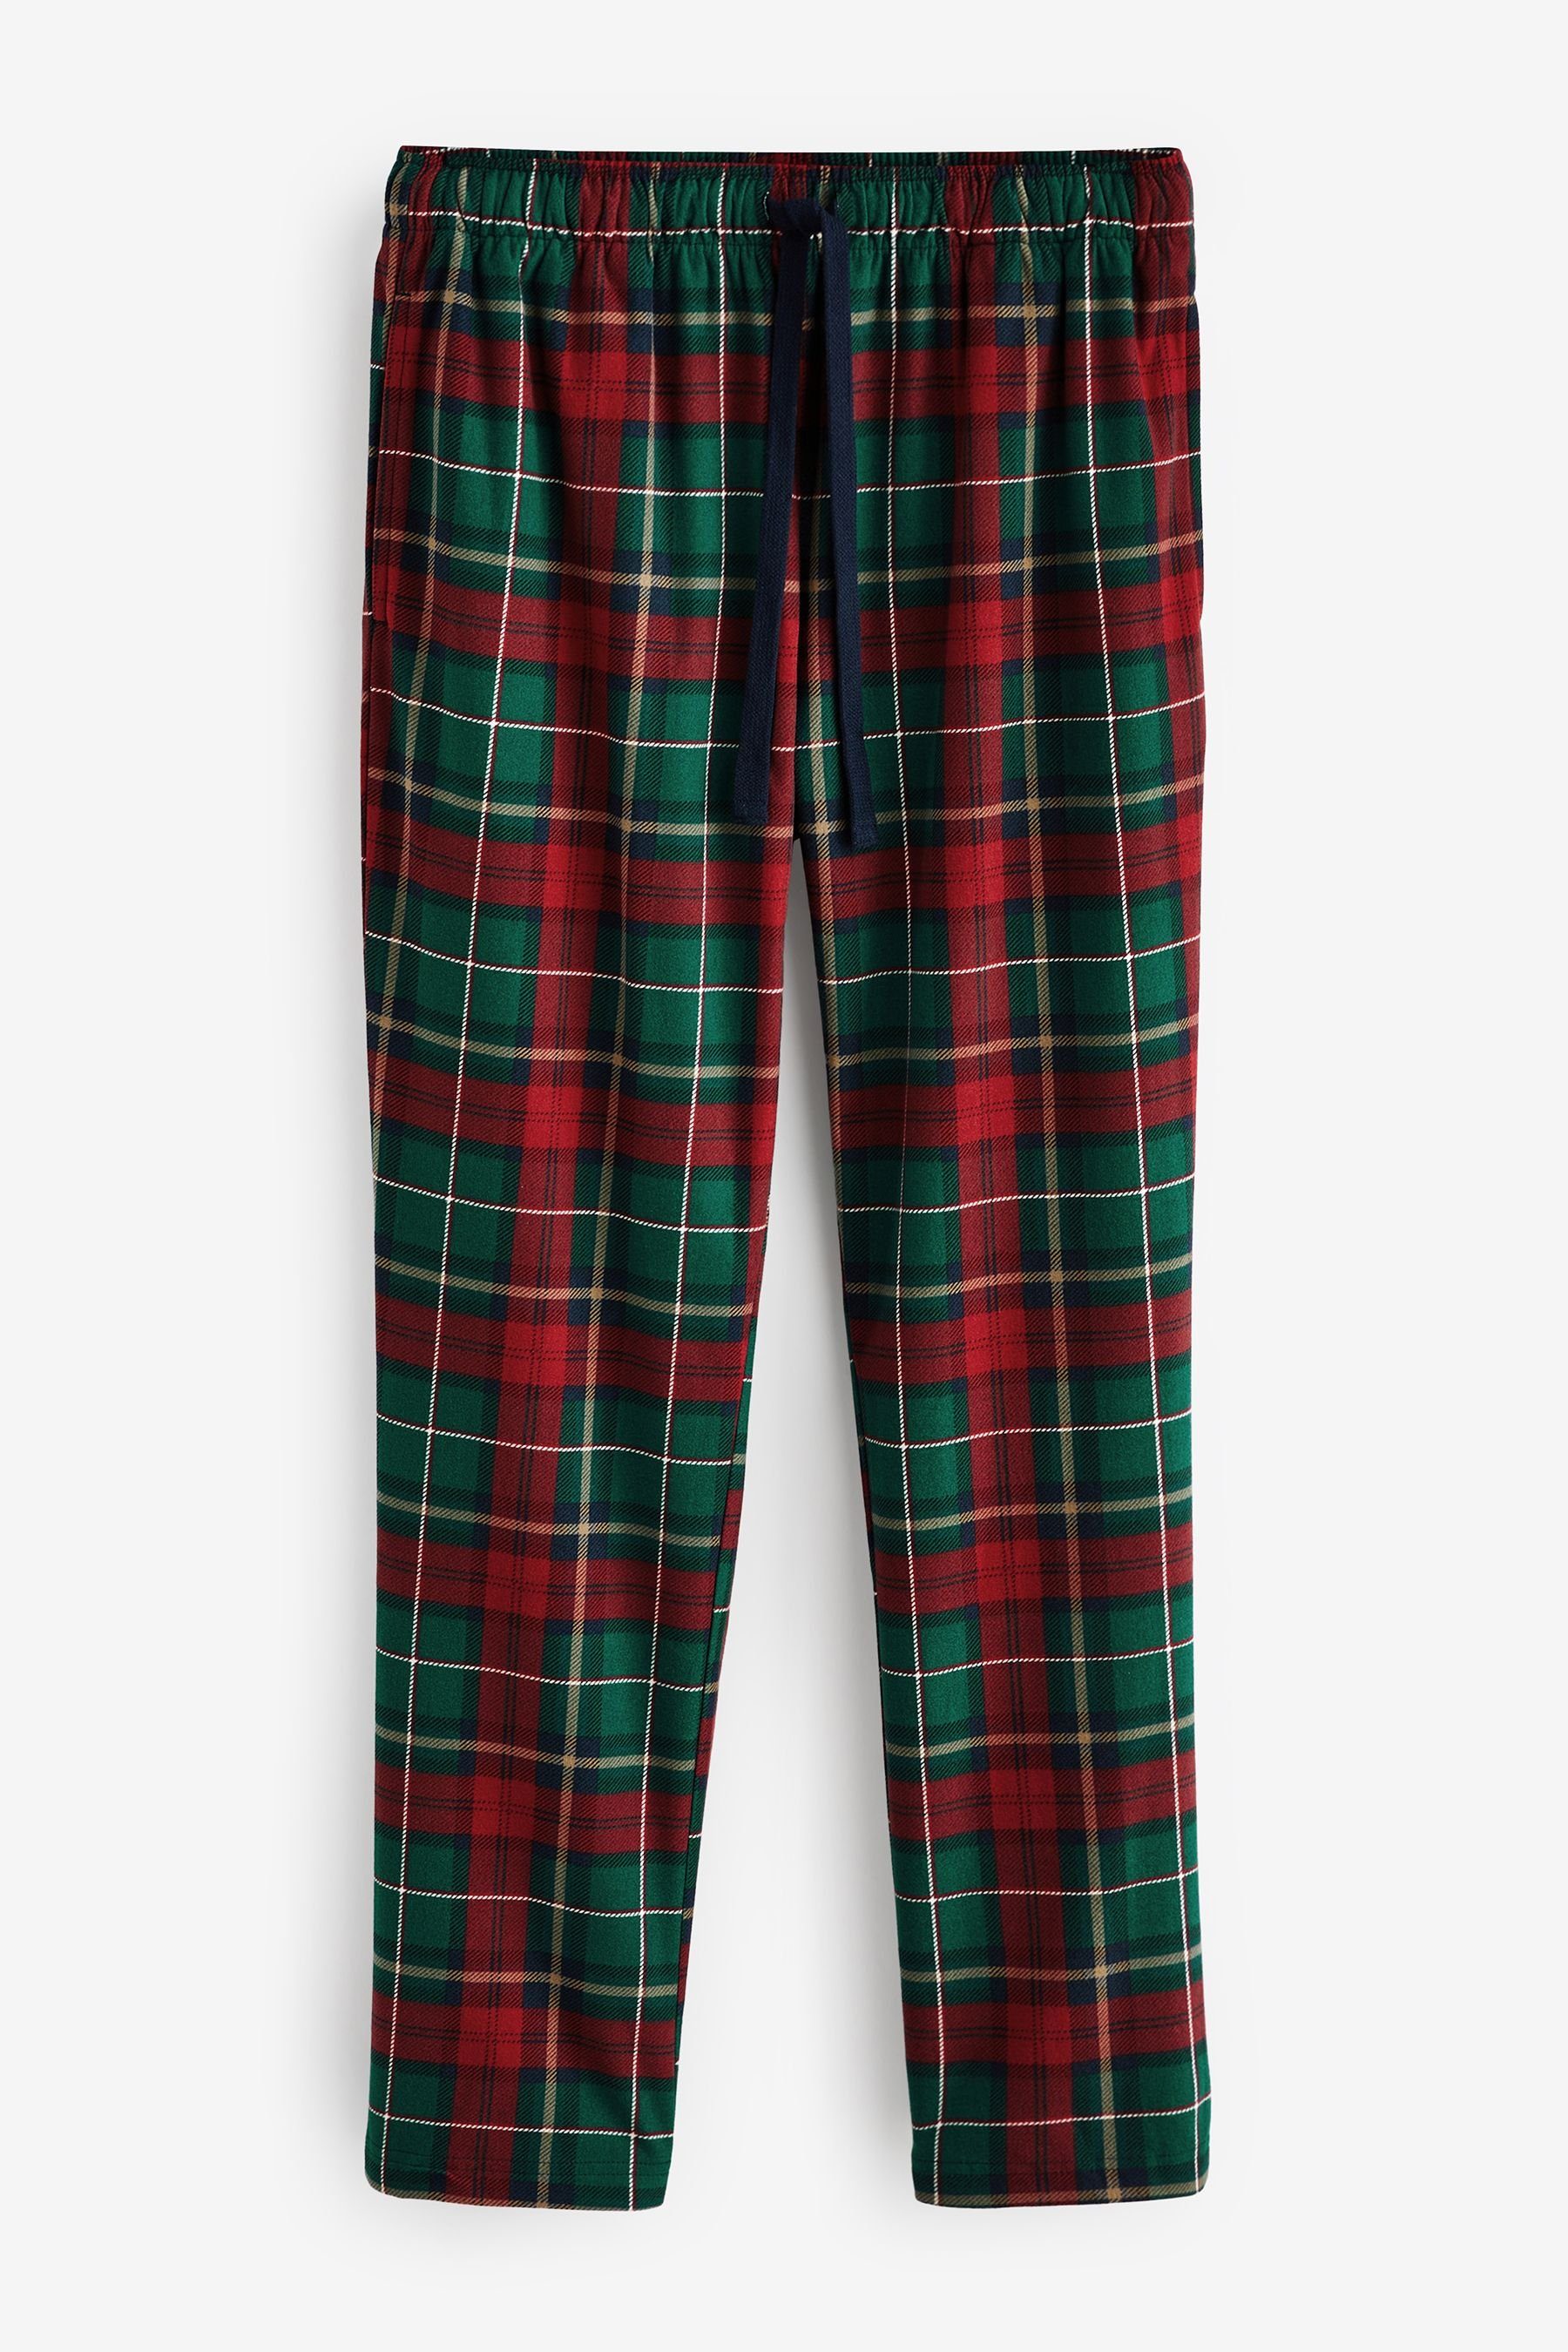 Next Pyjama Bequemer Schlafanzug tlg) Green/Red (2 Check Motionflex